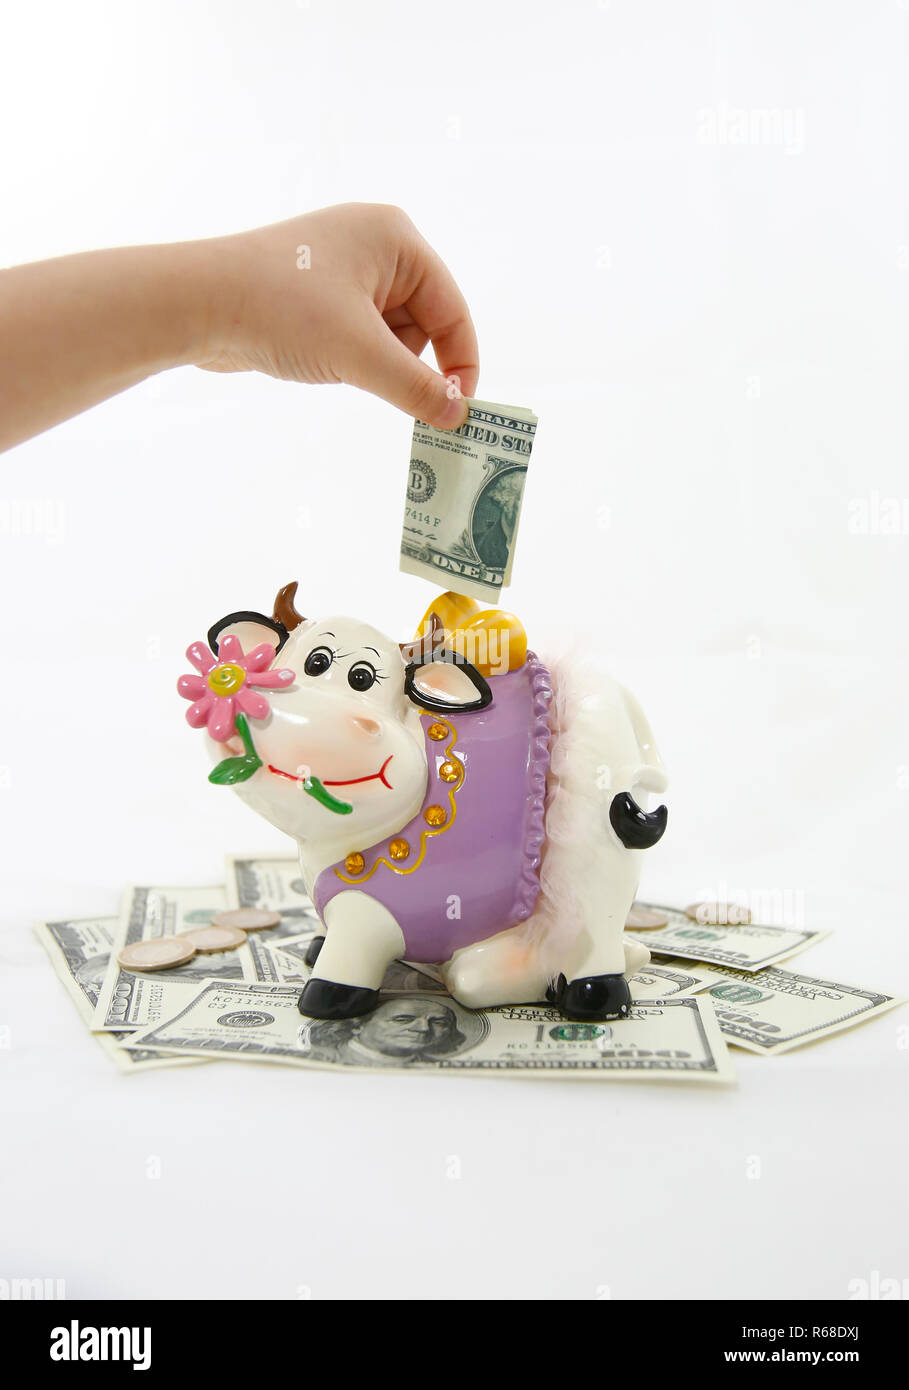 Cow coin bank Stock Photo